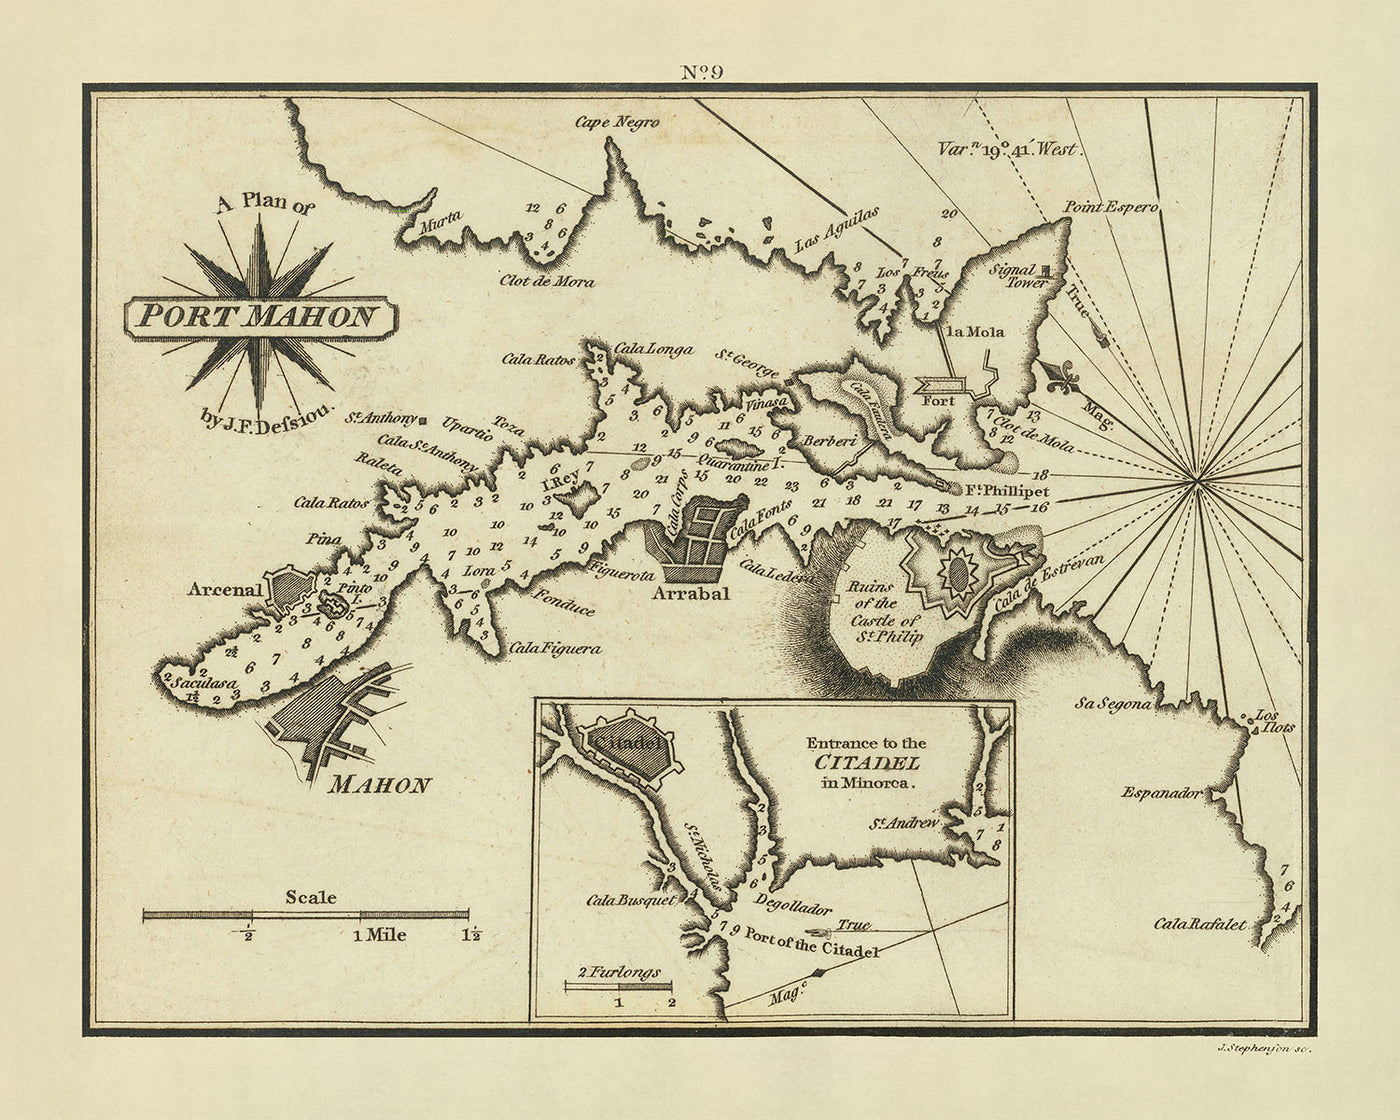 Carte nautique du Vieux Port Mahon par Heather, 1802 : Citadelle, Fort Saint-Philippe, Lazaret